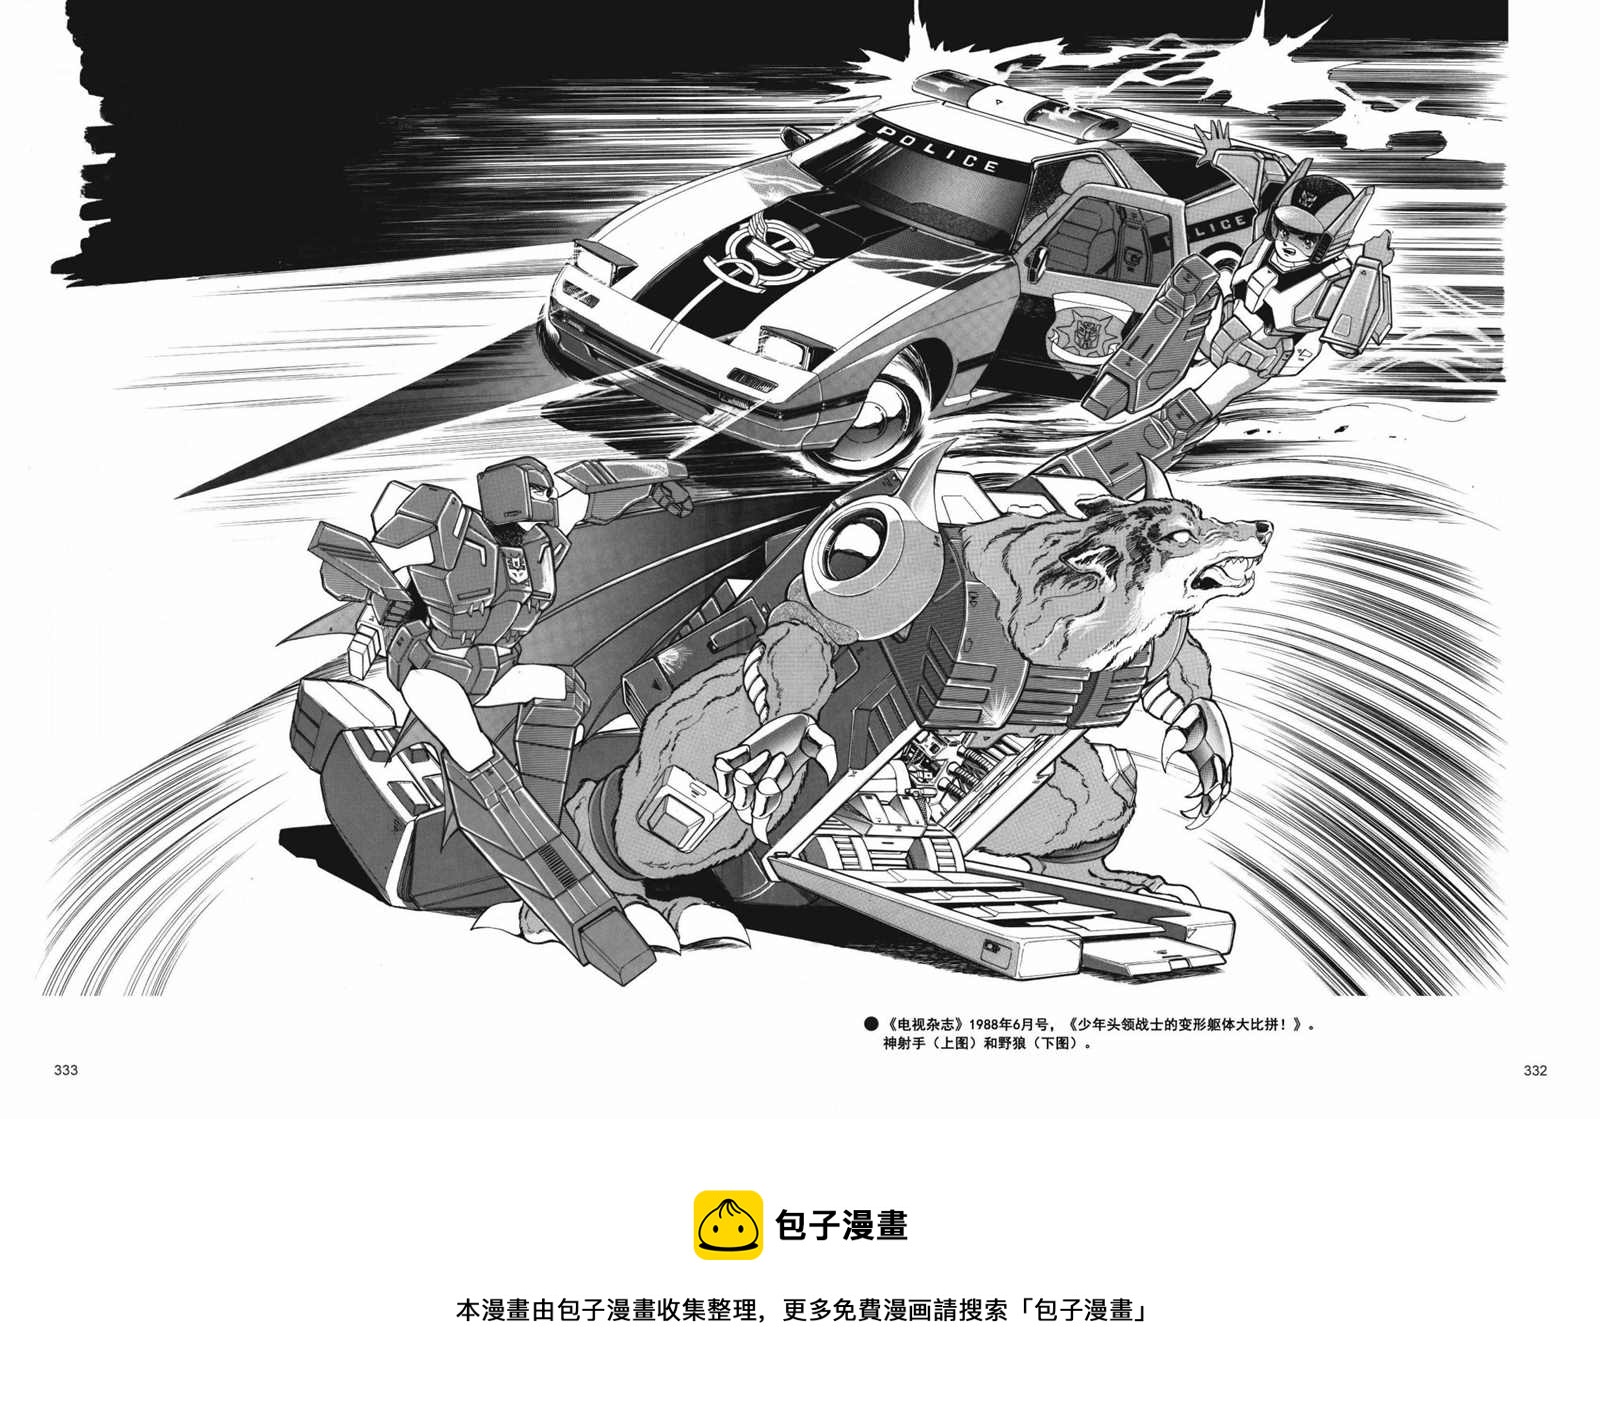 变形金刚日版G1杂志插画 - 战斗吧！超机械生命体变形金刚：超神勇者之力 - 3